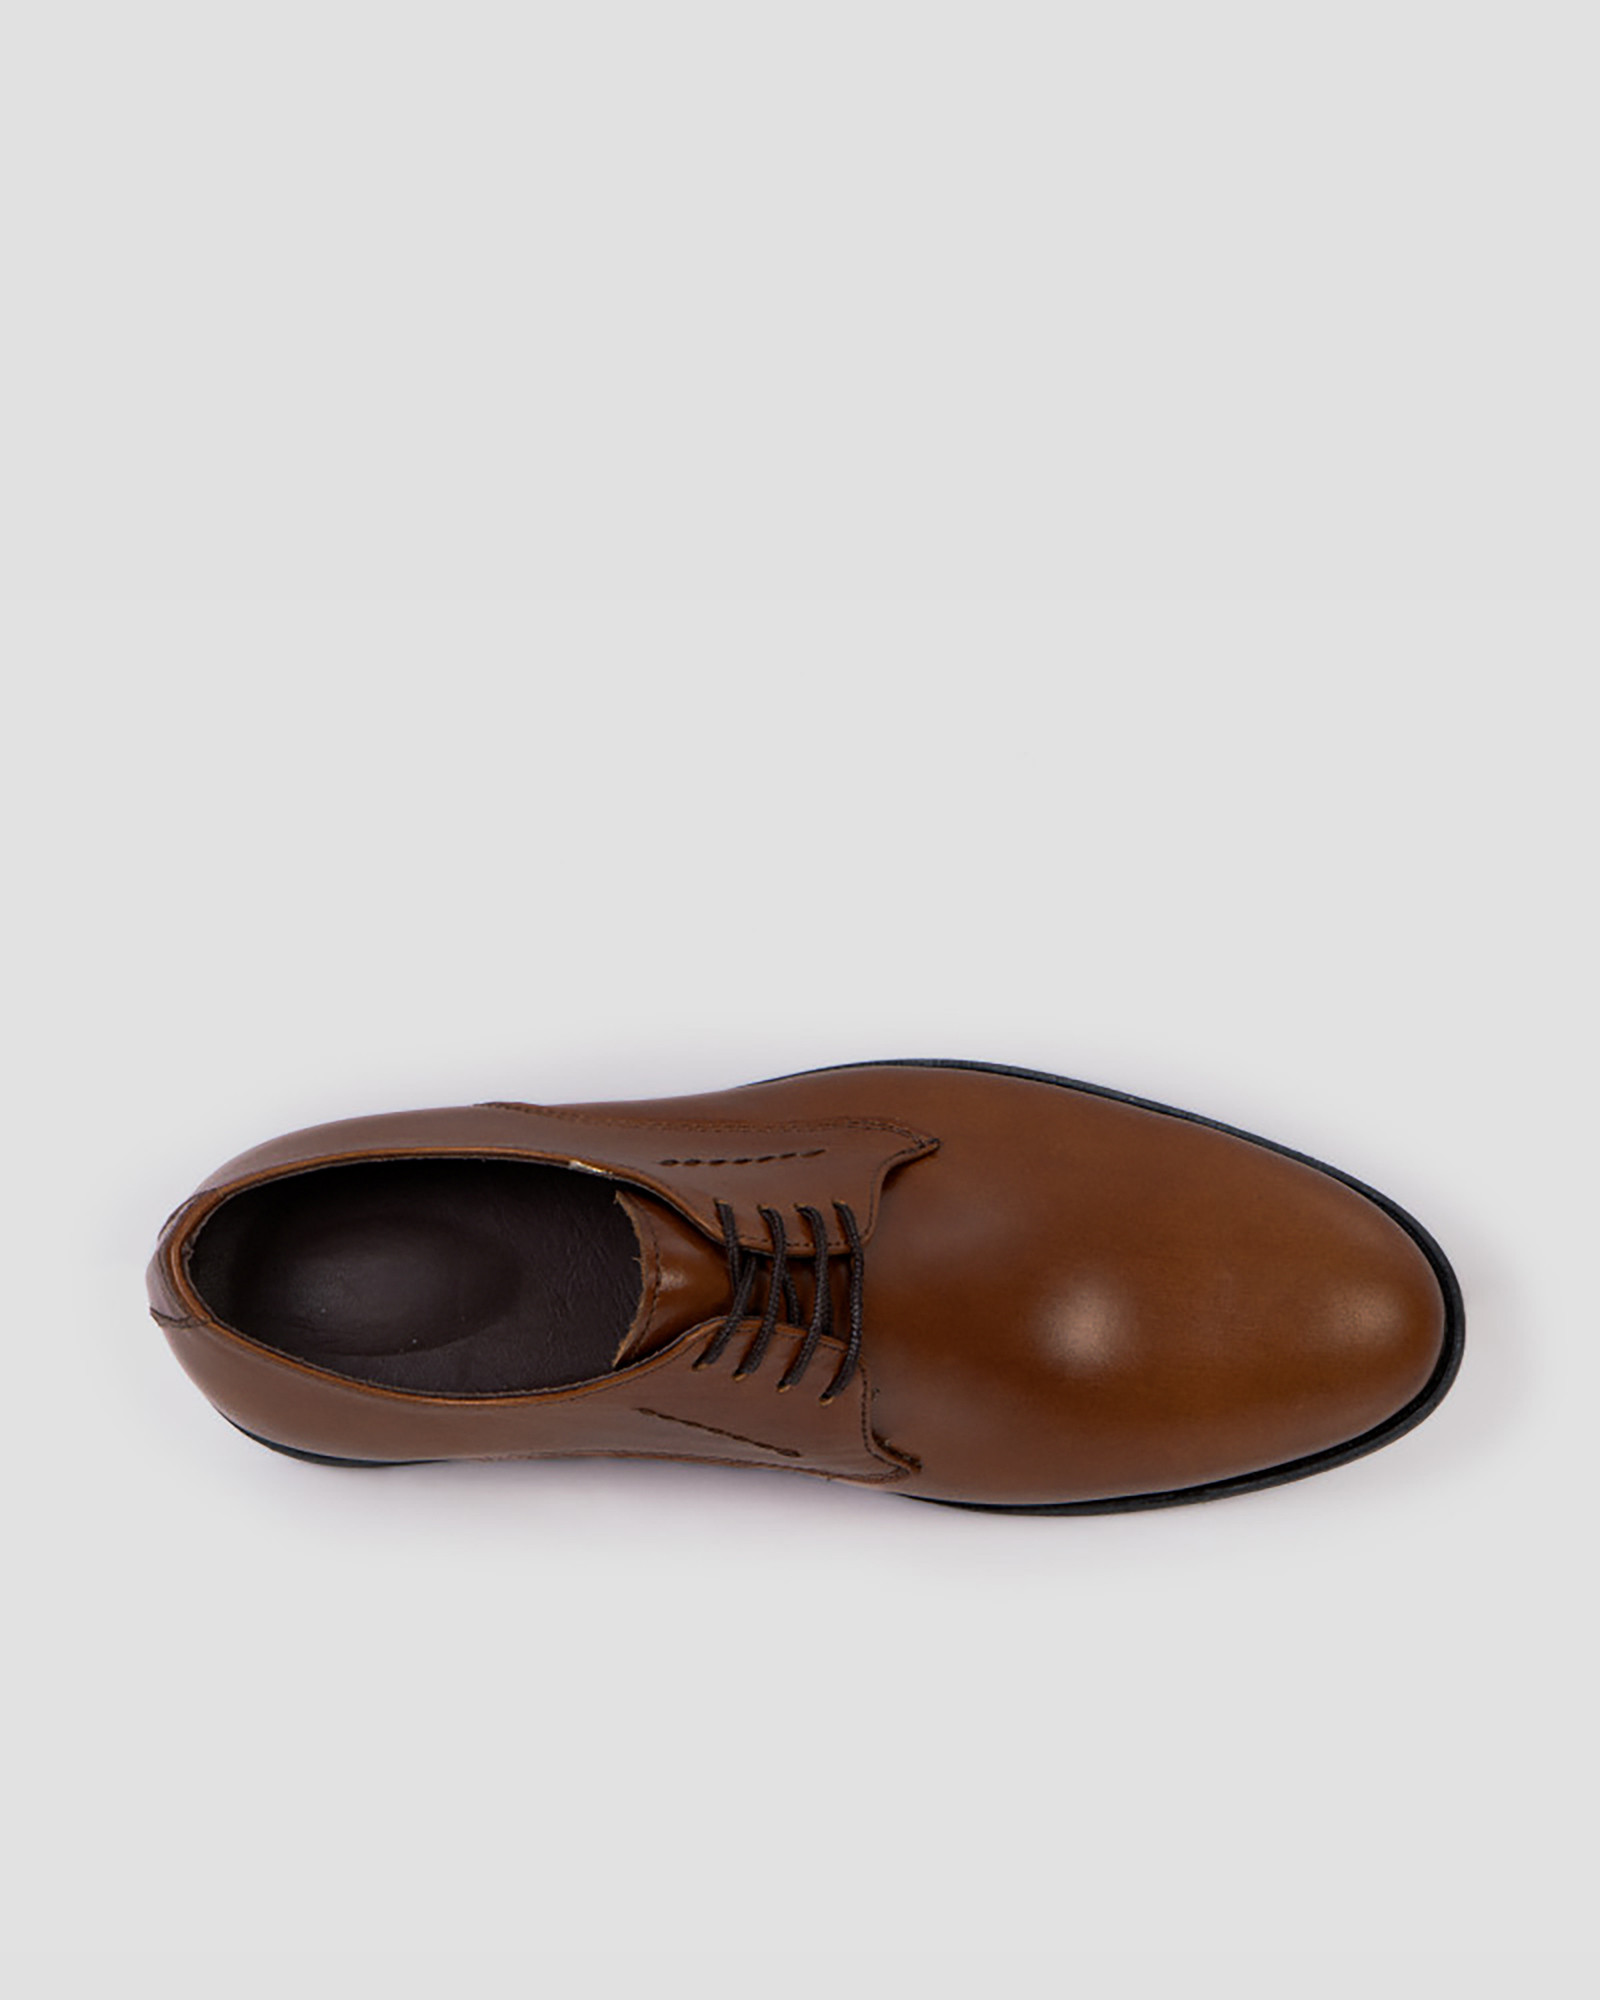 کفش کلاسیک بنددار قهوه ای با چرم طبیعی17443101